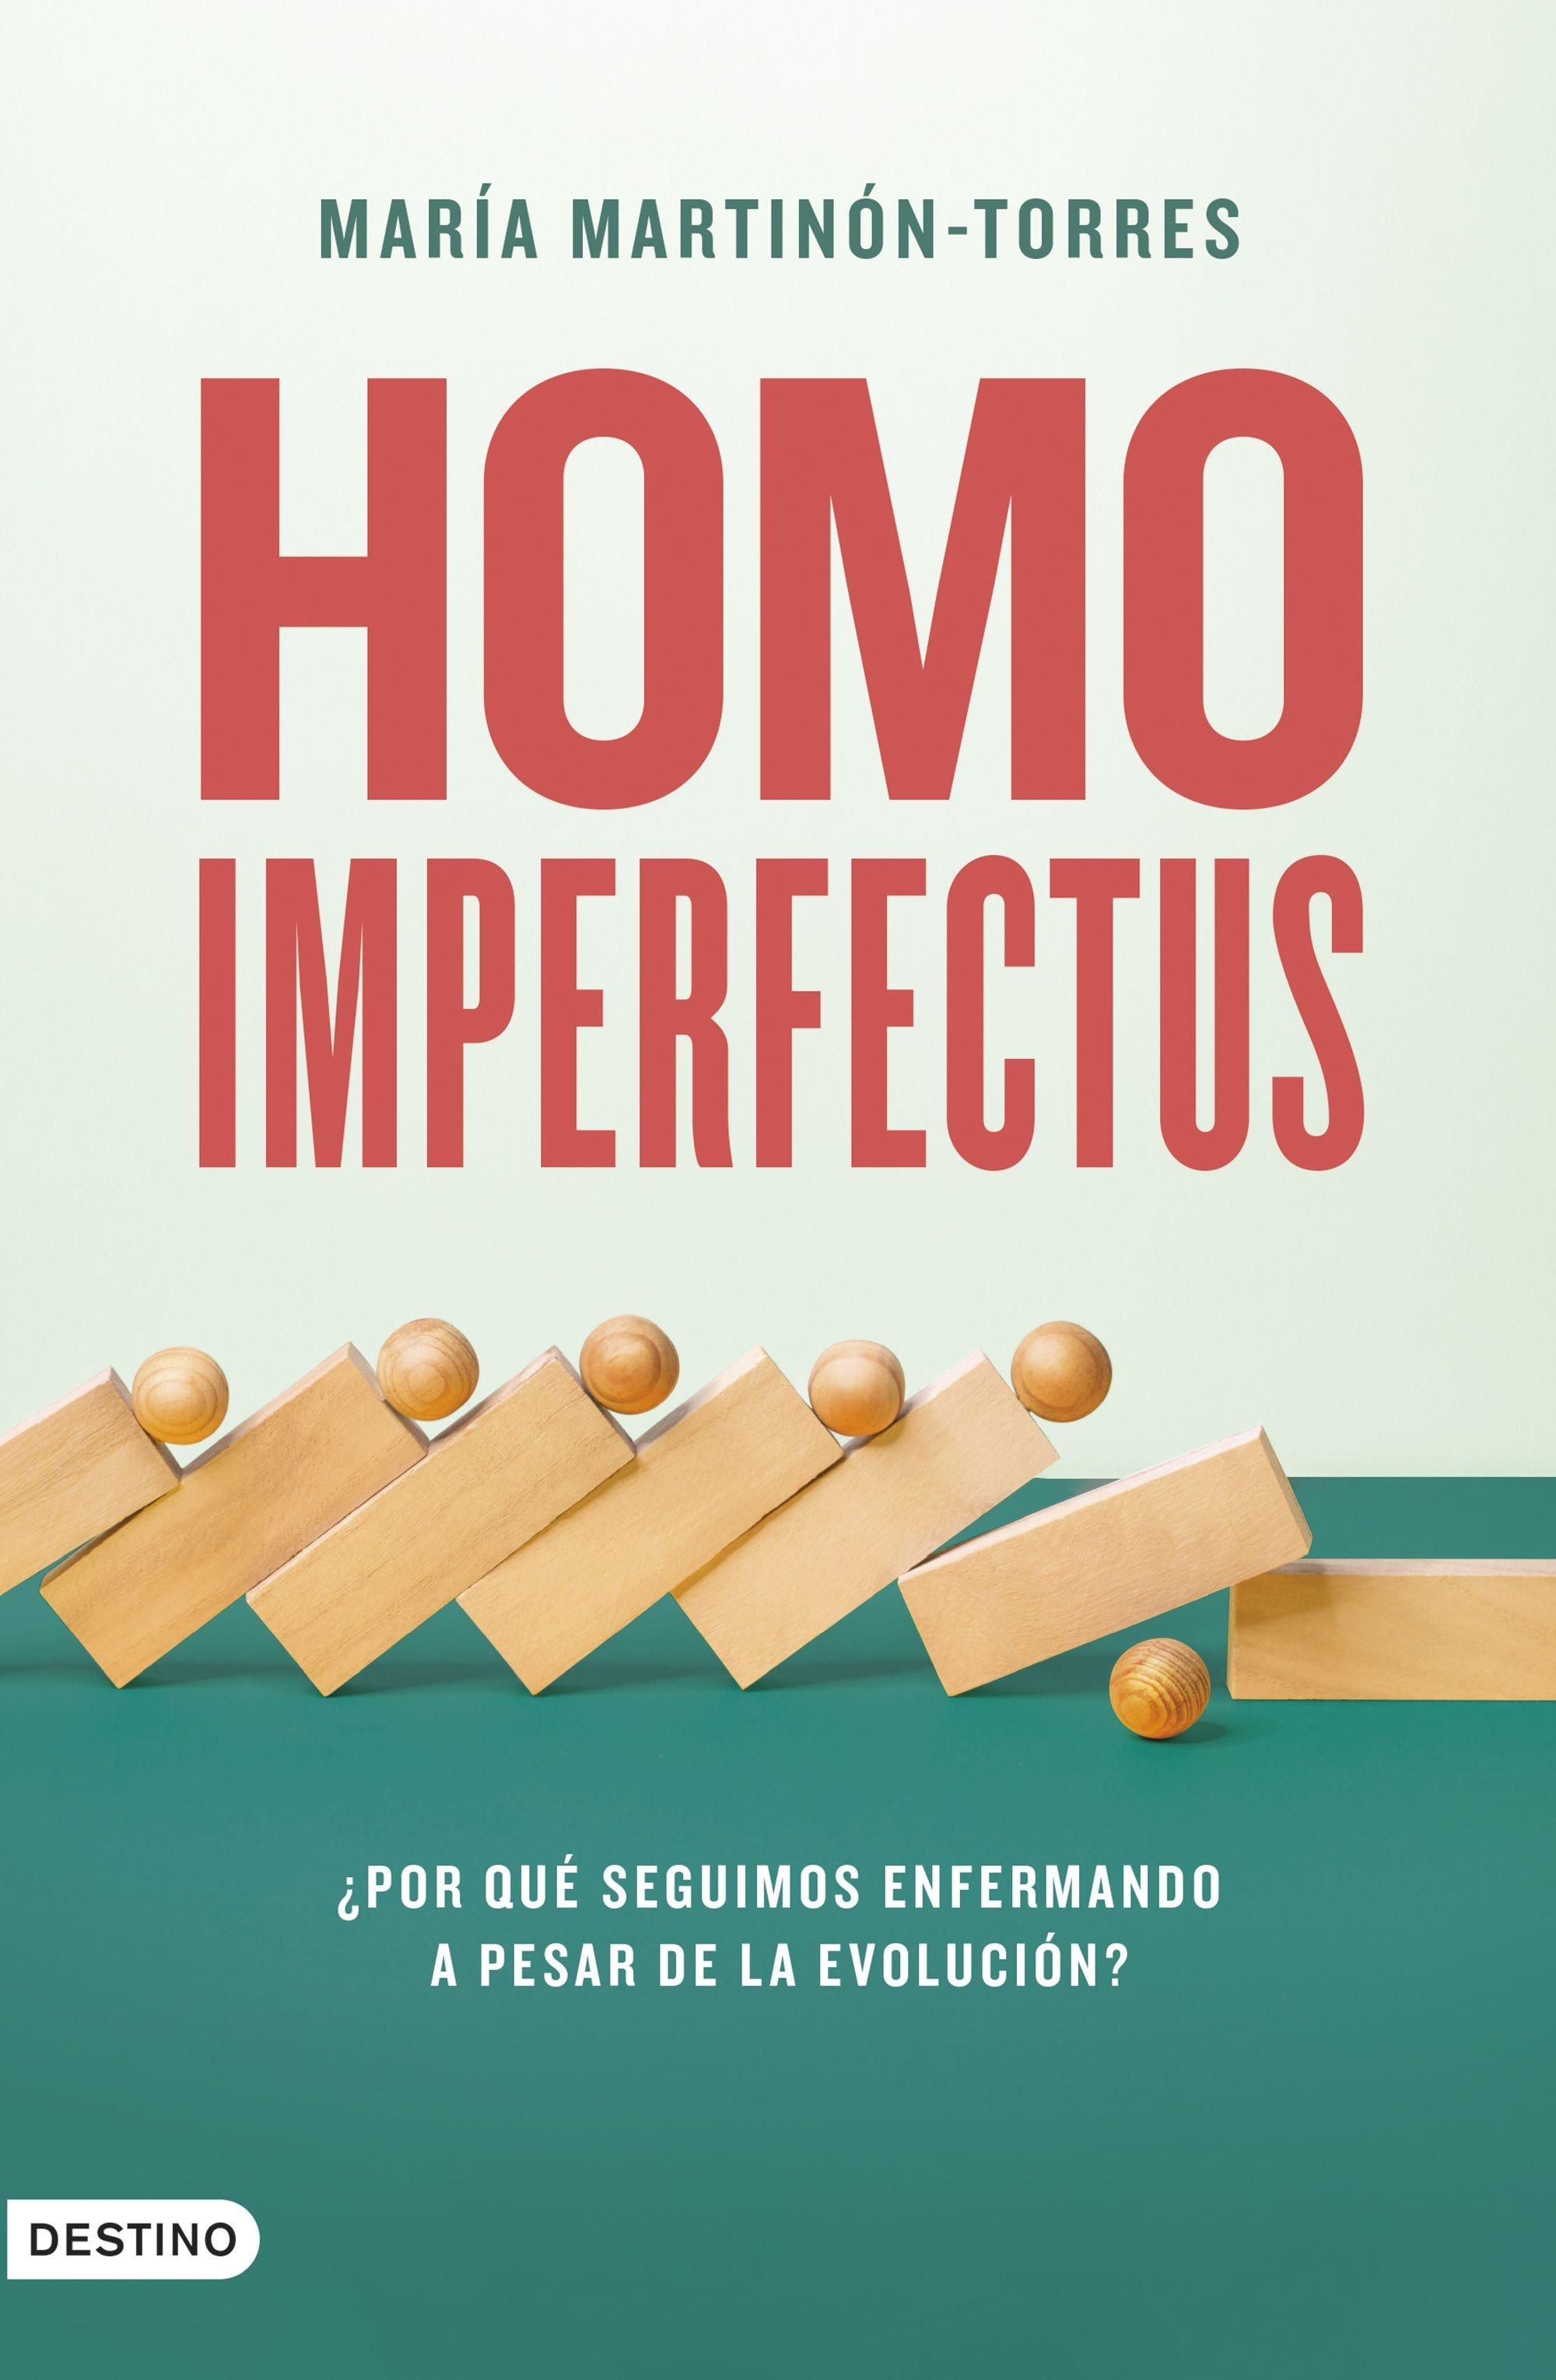 Homo imperfectus "¿Por qué seguimos enfermando a pesar de la evolución?"